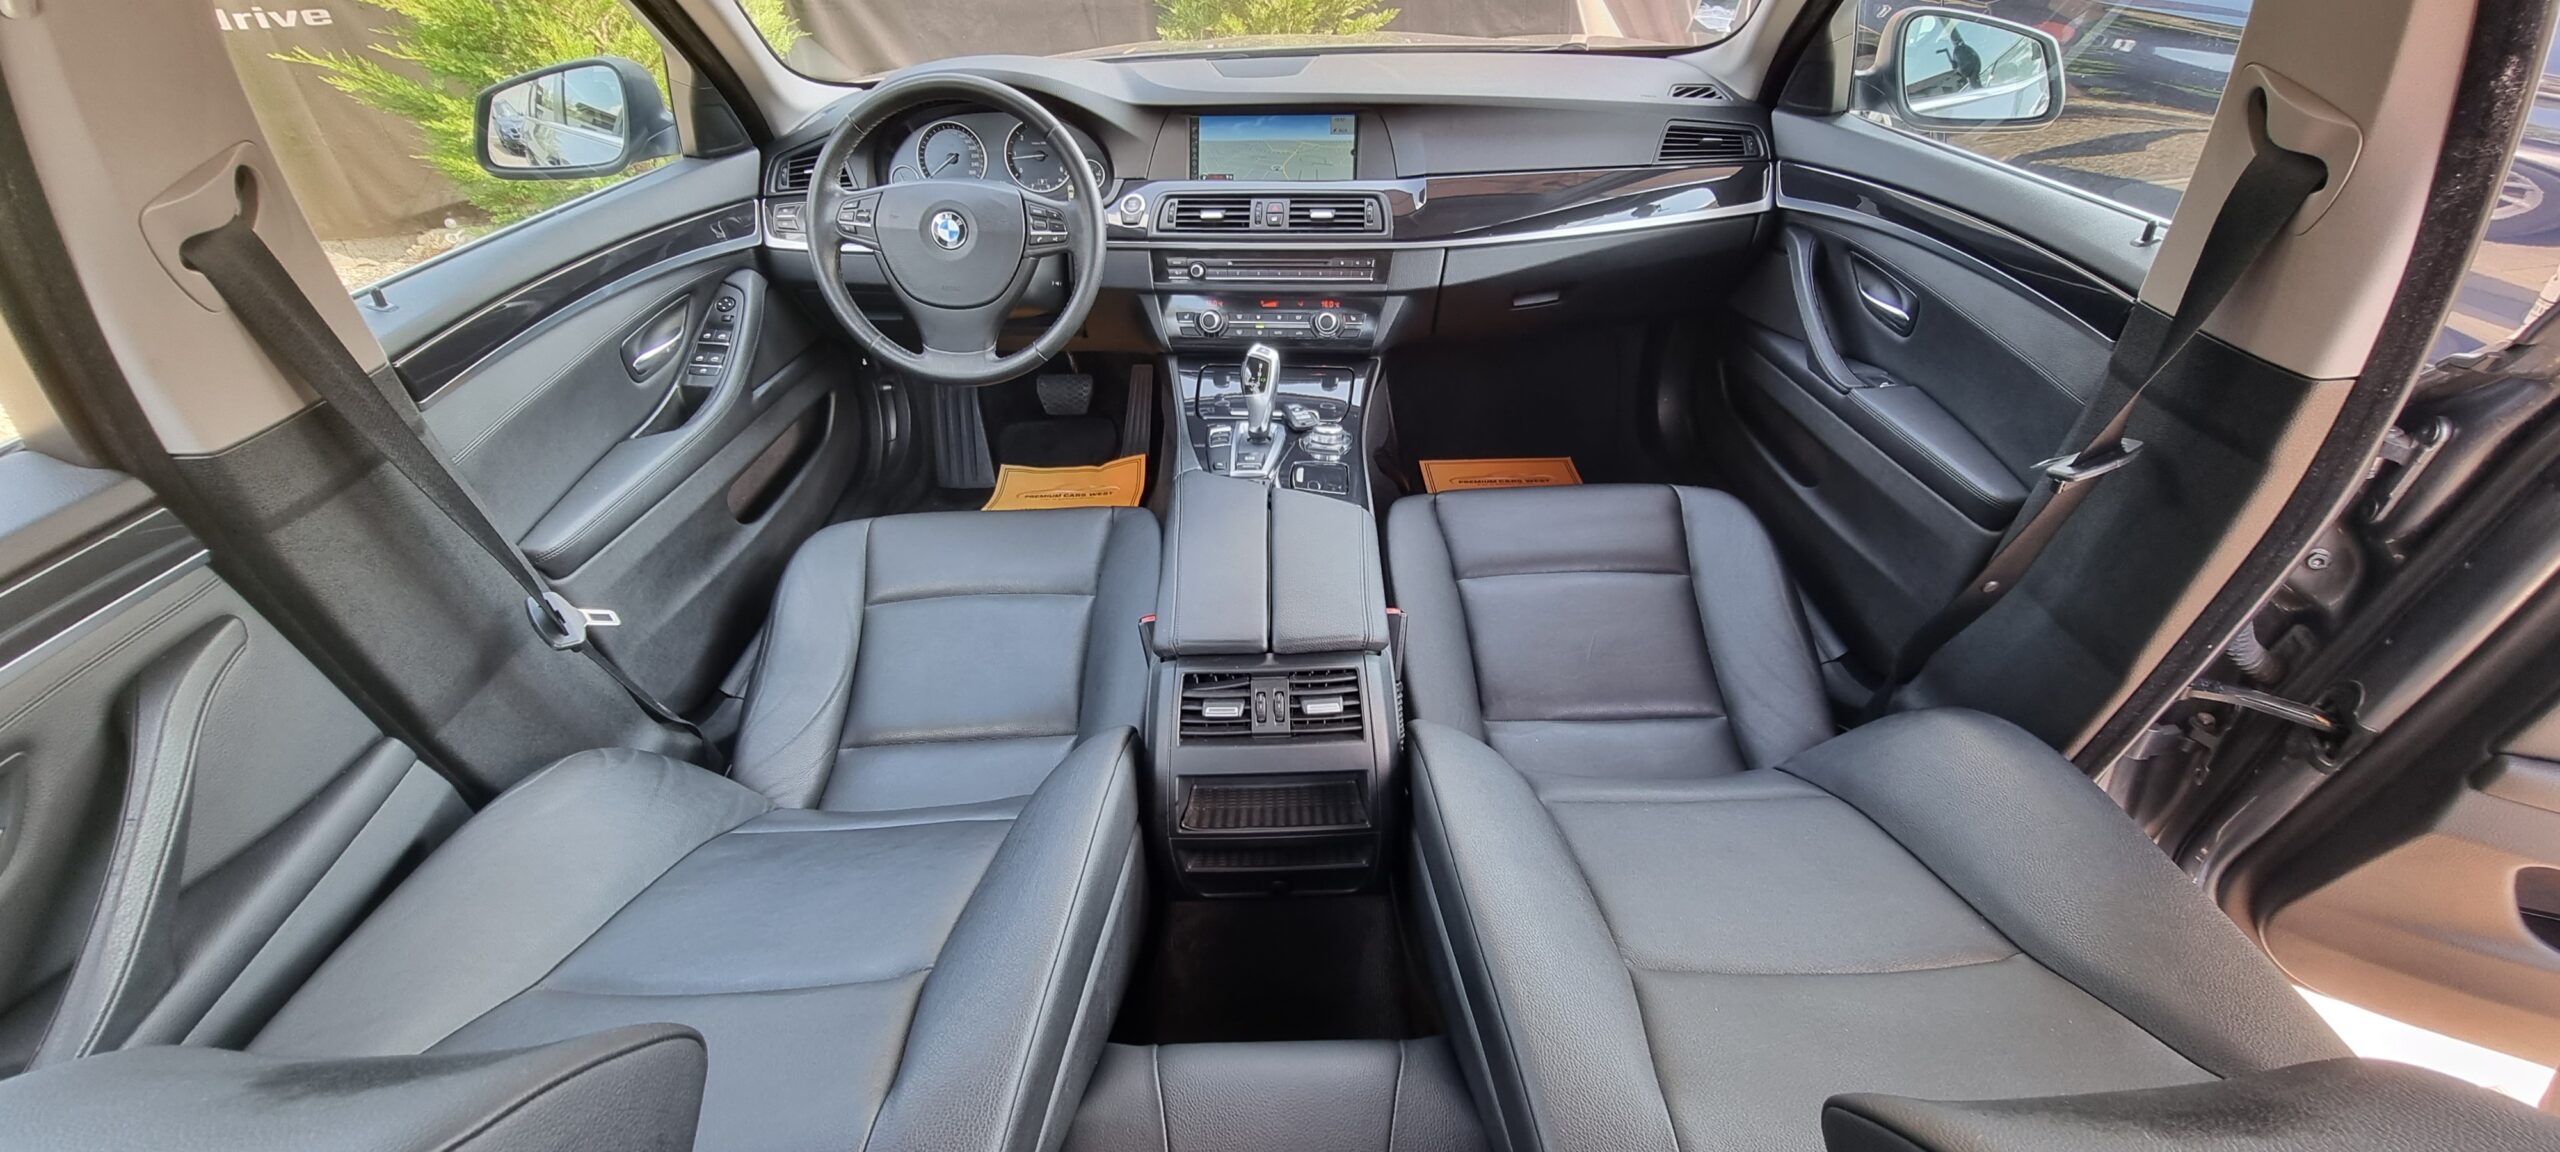 BMW SERIA 5 F10 AUTOMAT, 2.0 DIESEL, 184 CP, EURO 5, AN 2012